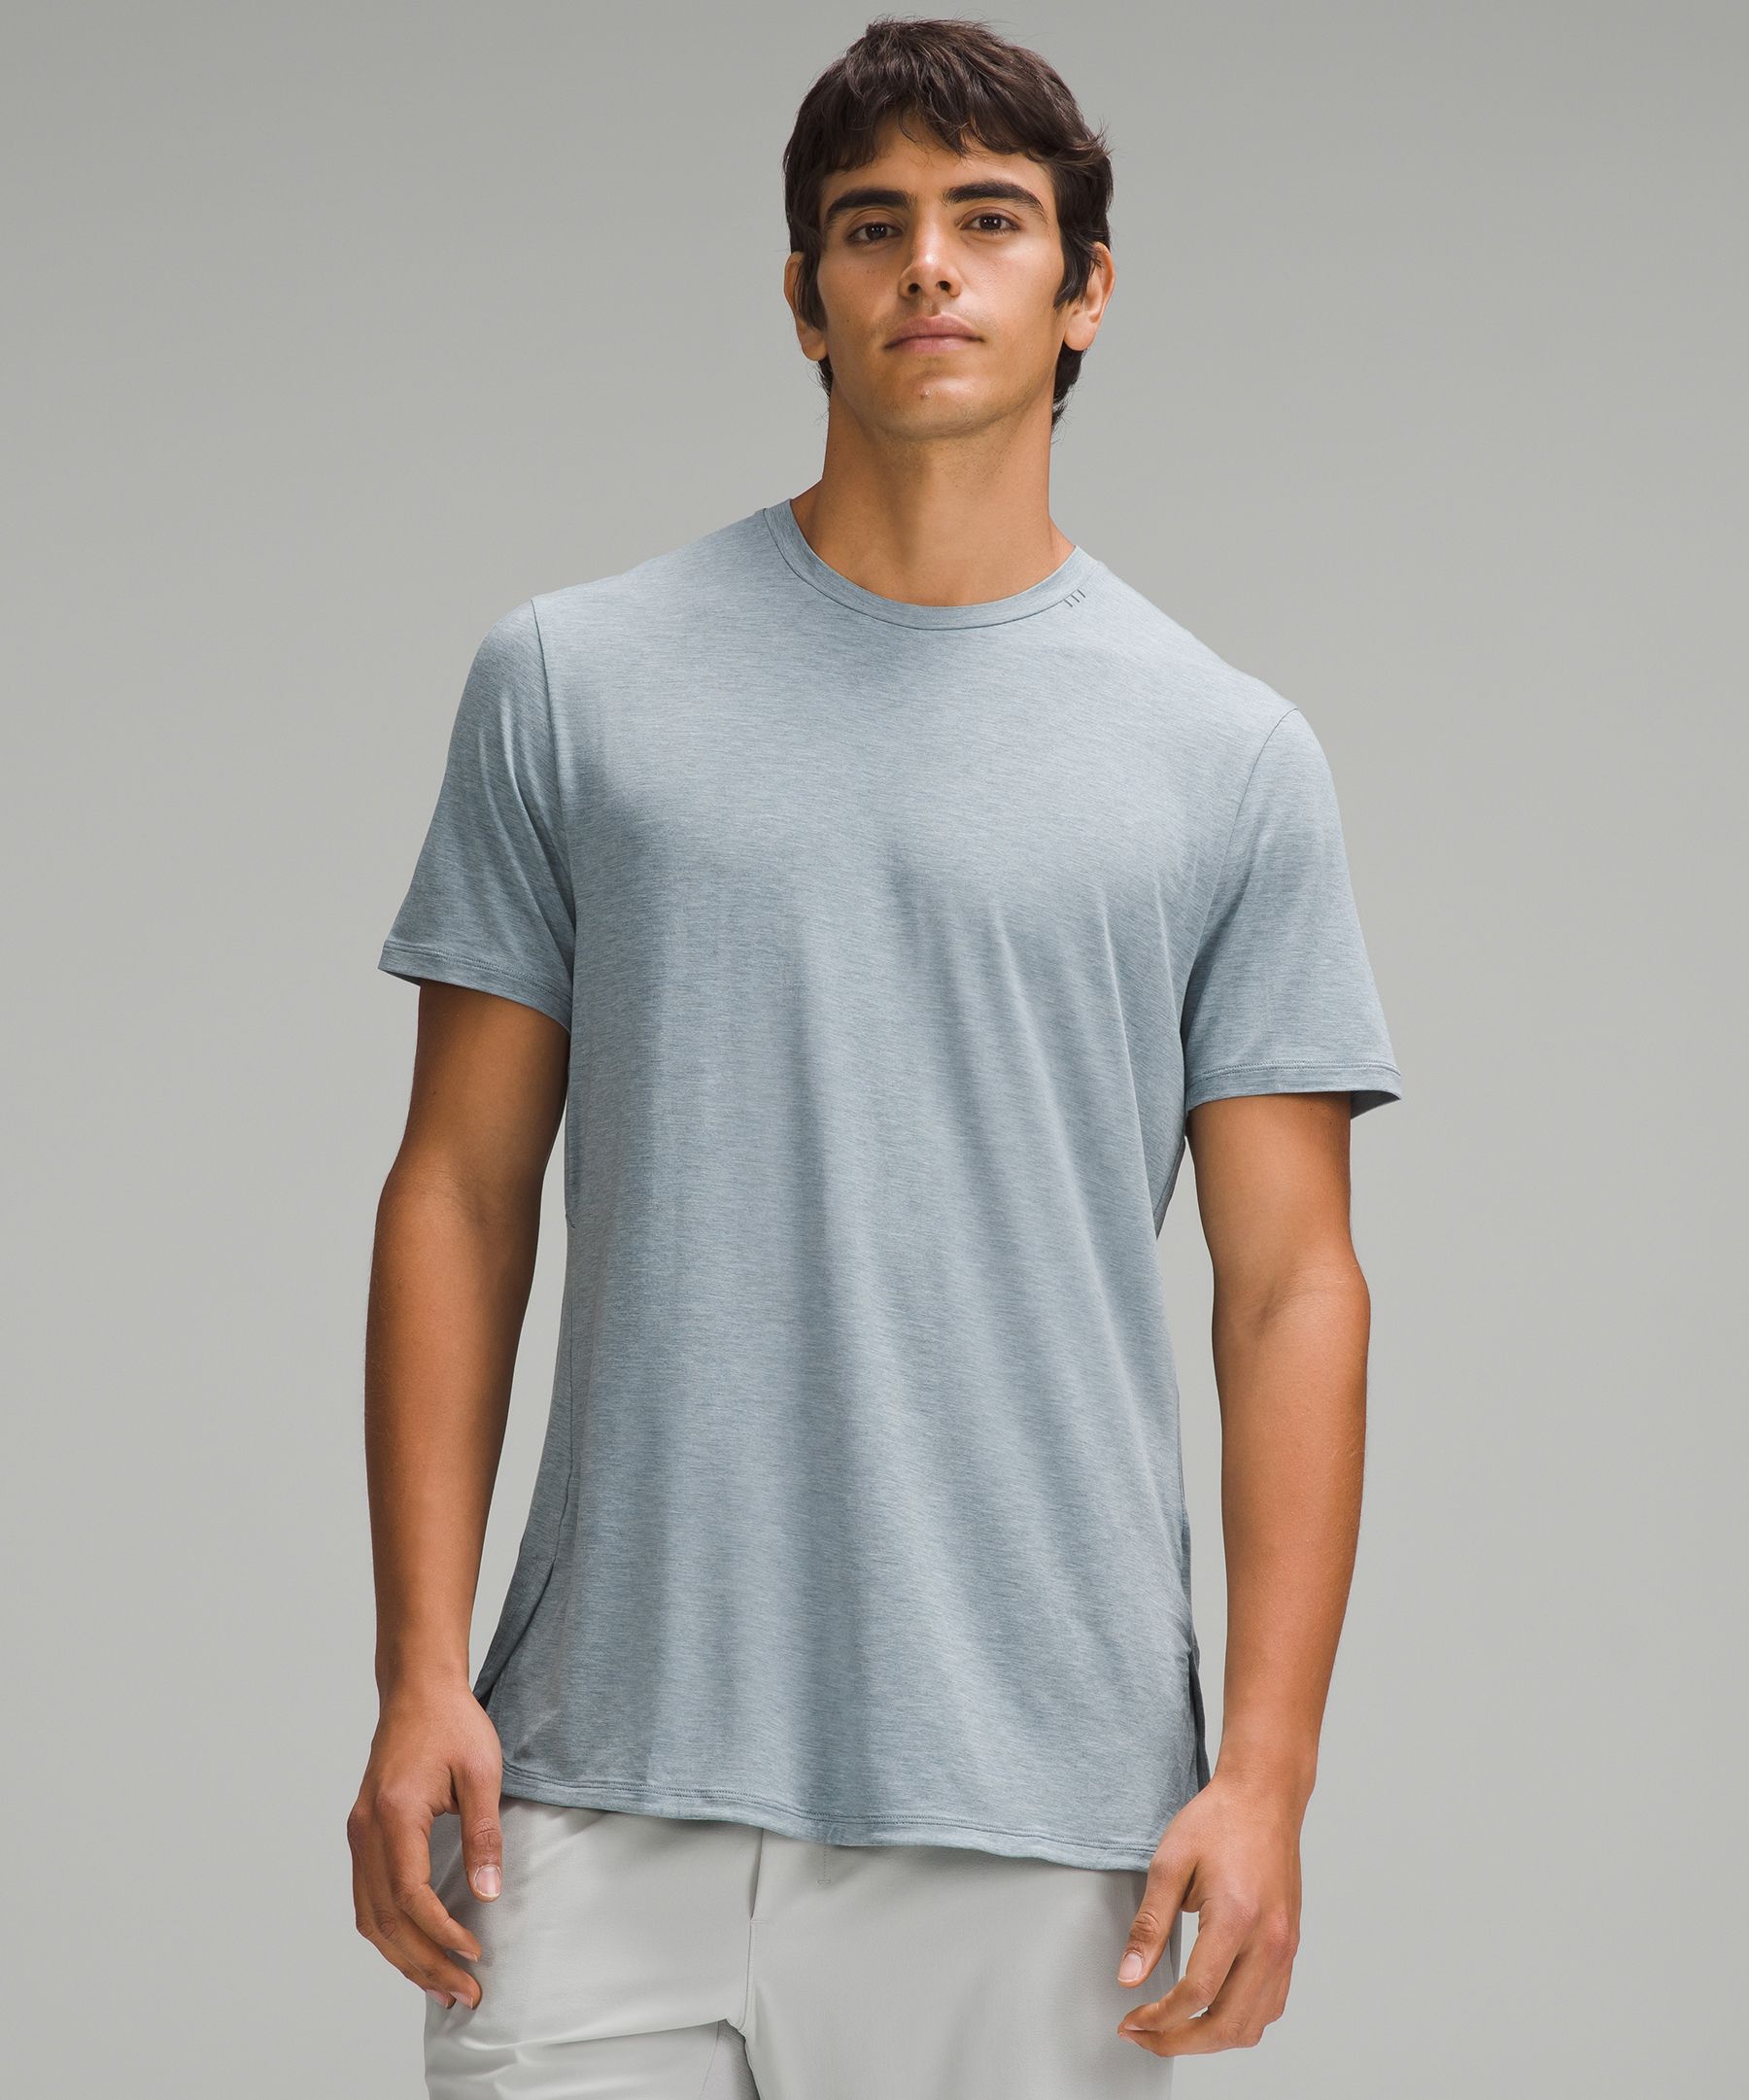 Mens Yoga Tops & T-Shirts.